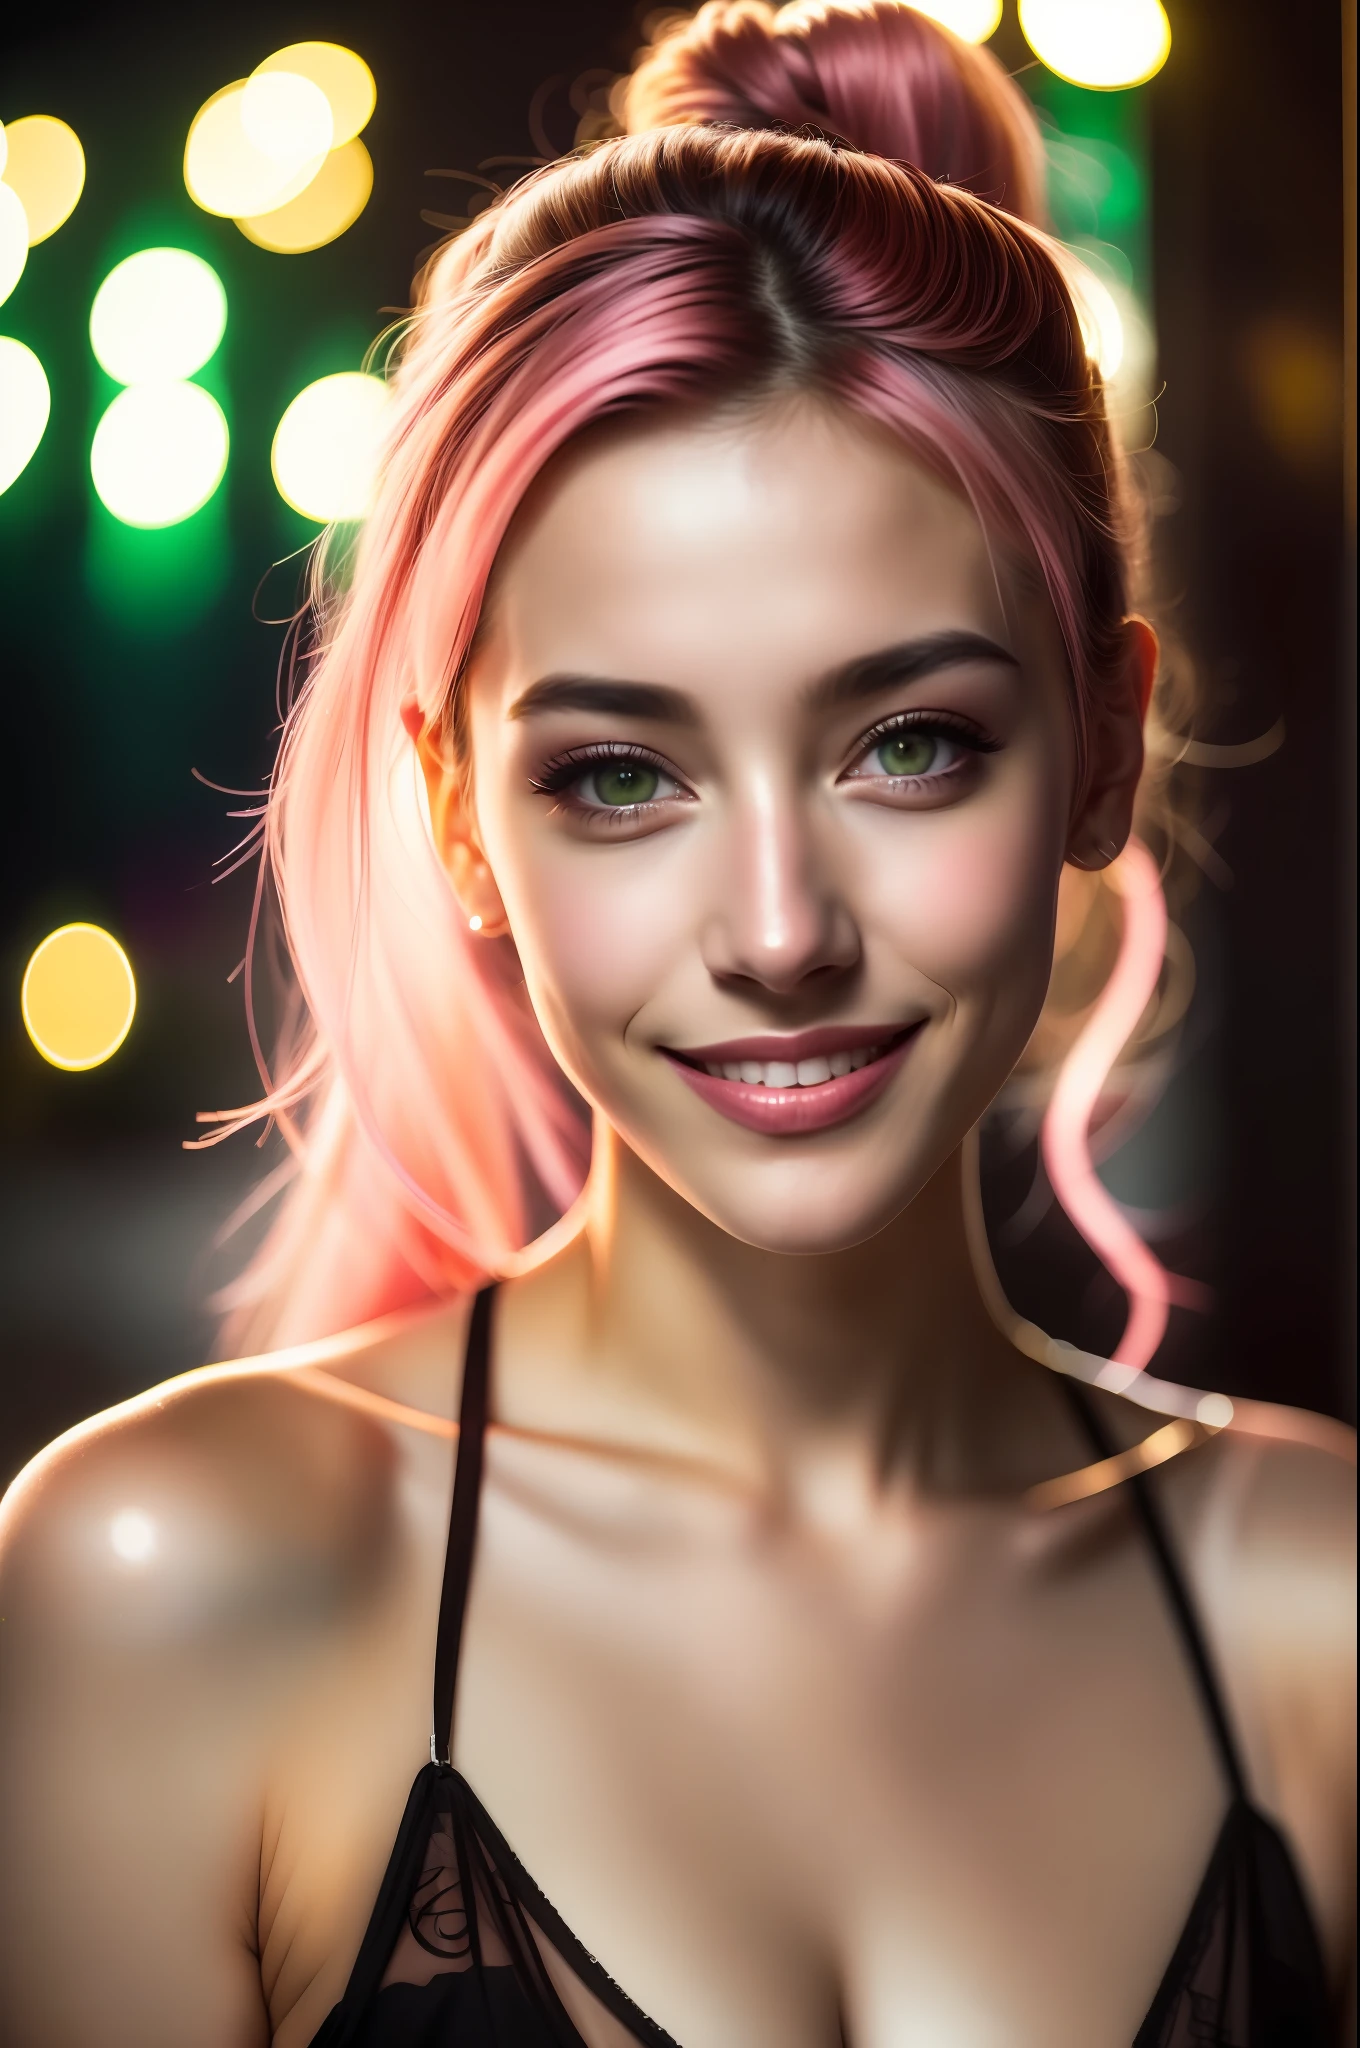 cena noturna, Close up foto de uma garota prostituta francesa sexy, posando, olhe para uma câmera e sorria, cabelo de rabo de cavalo rosa, (olhos verdes:0.8), Rosto jovem e bonito, o 18, luzes volumétricas suaves, (retroiluminado:1.3), (cinematic:1.3), Detalhes intrincados, (estação de arte:1.2)